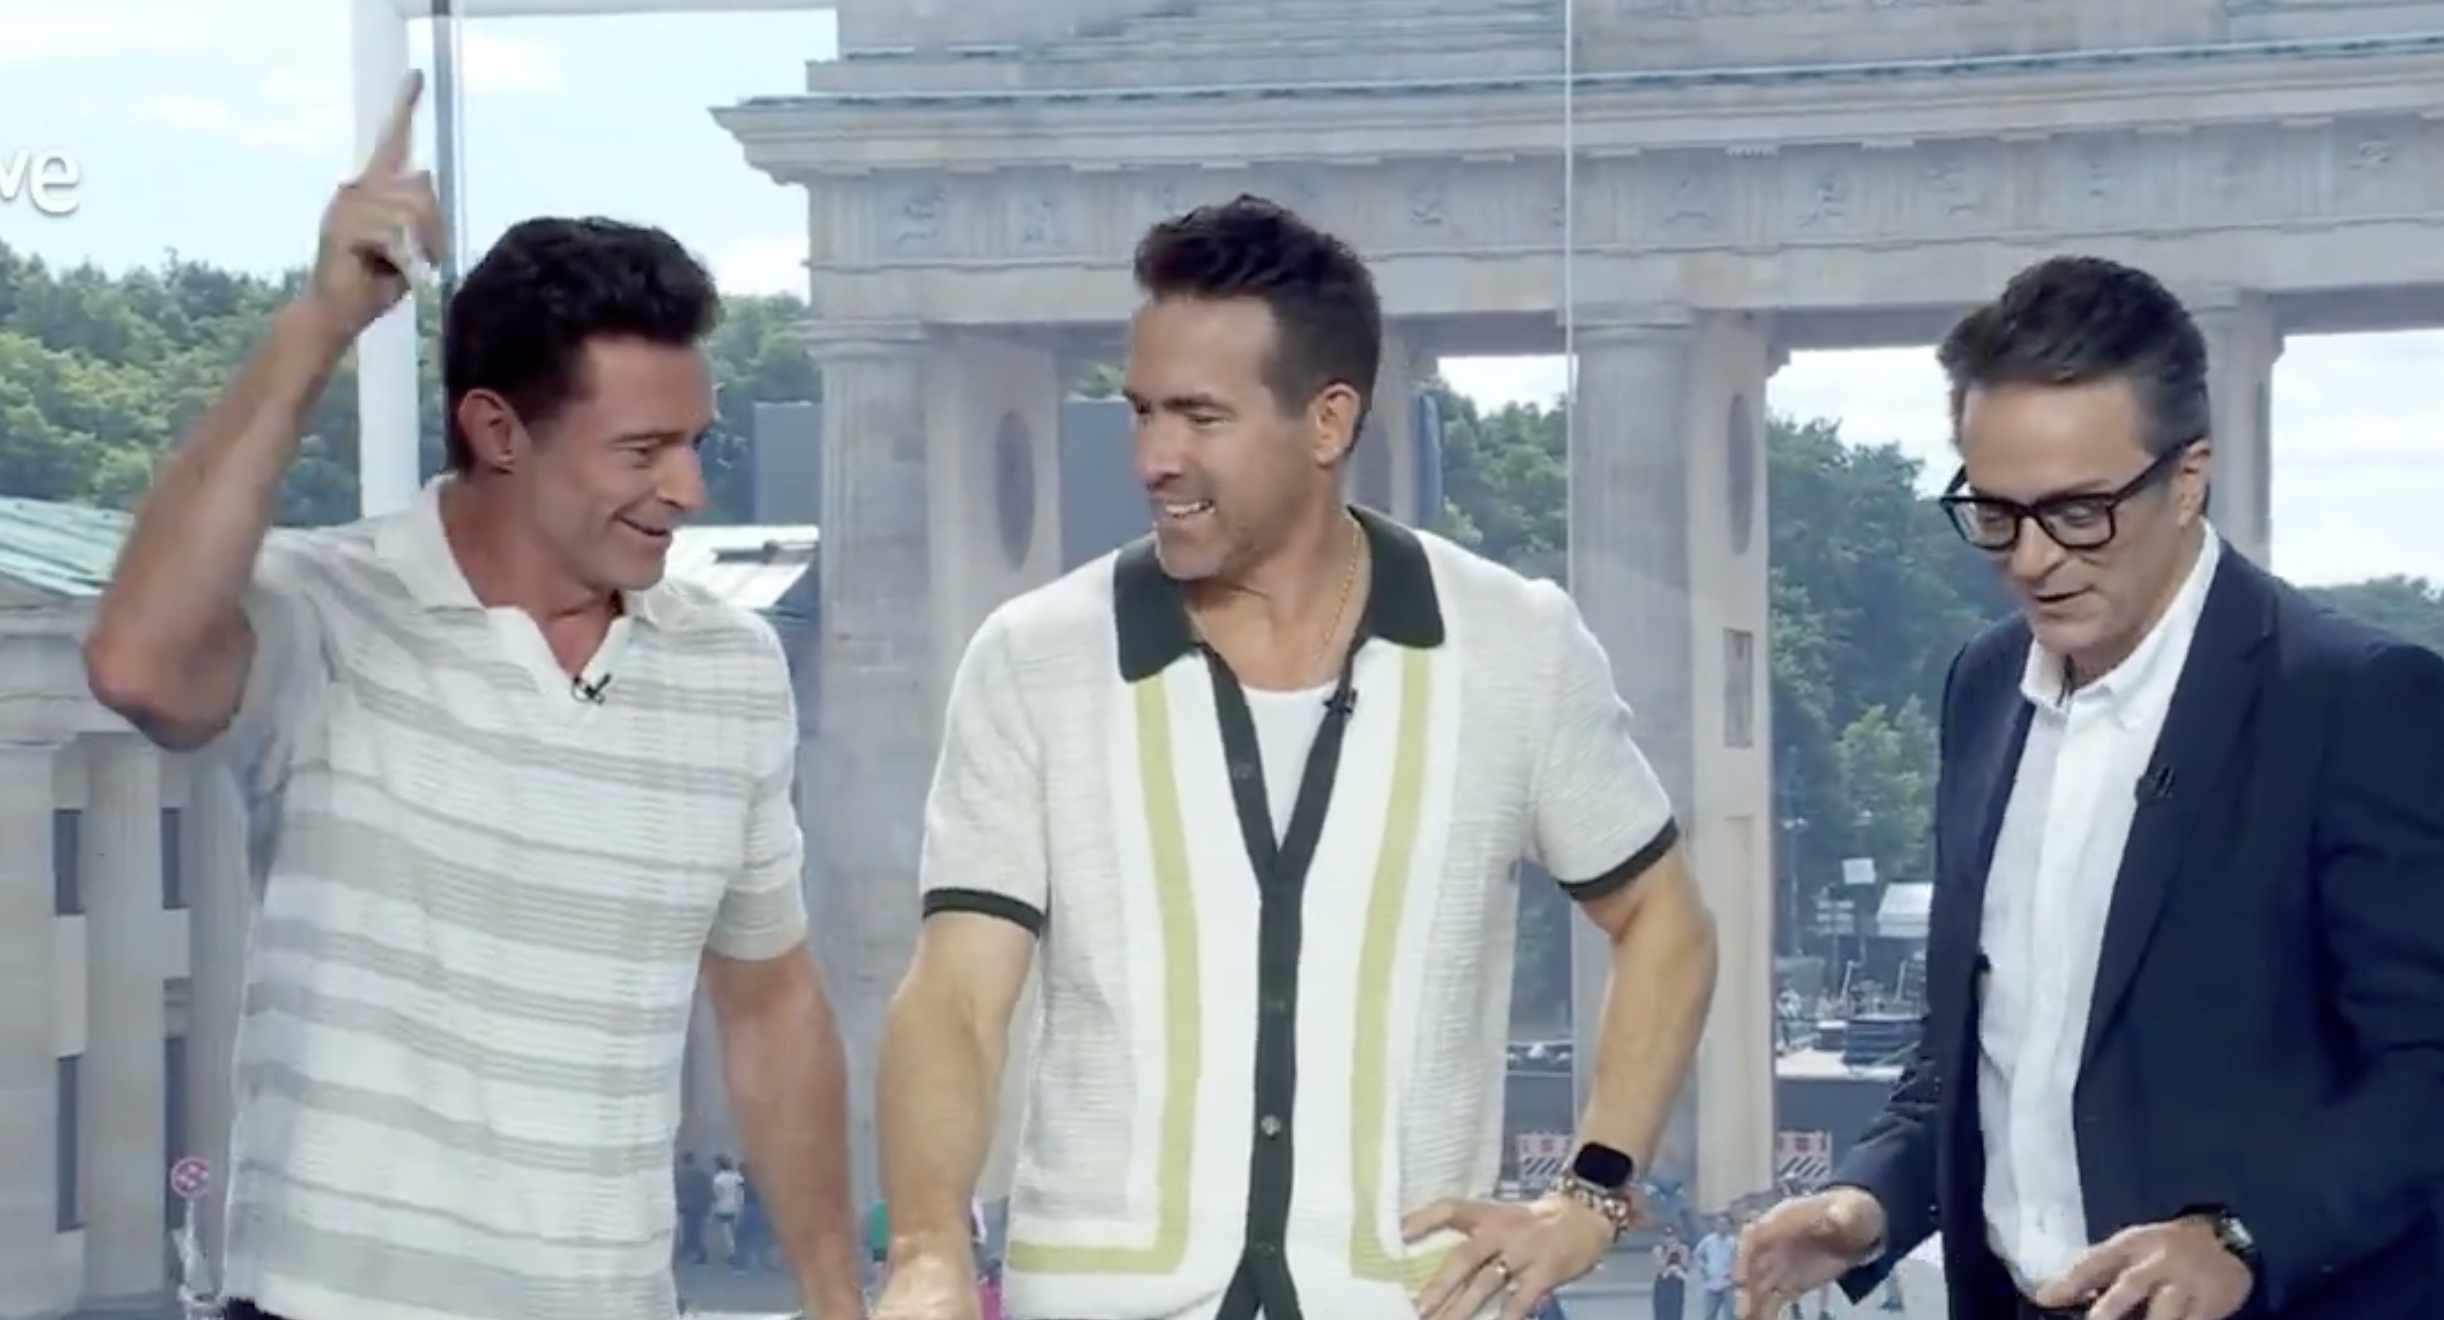 Hugh Jackman y Ryan Reynolds irrumpen en el plató de TVE por la Eurocopa: "¡Viva España!"